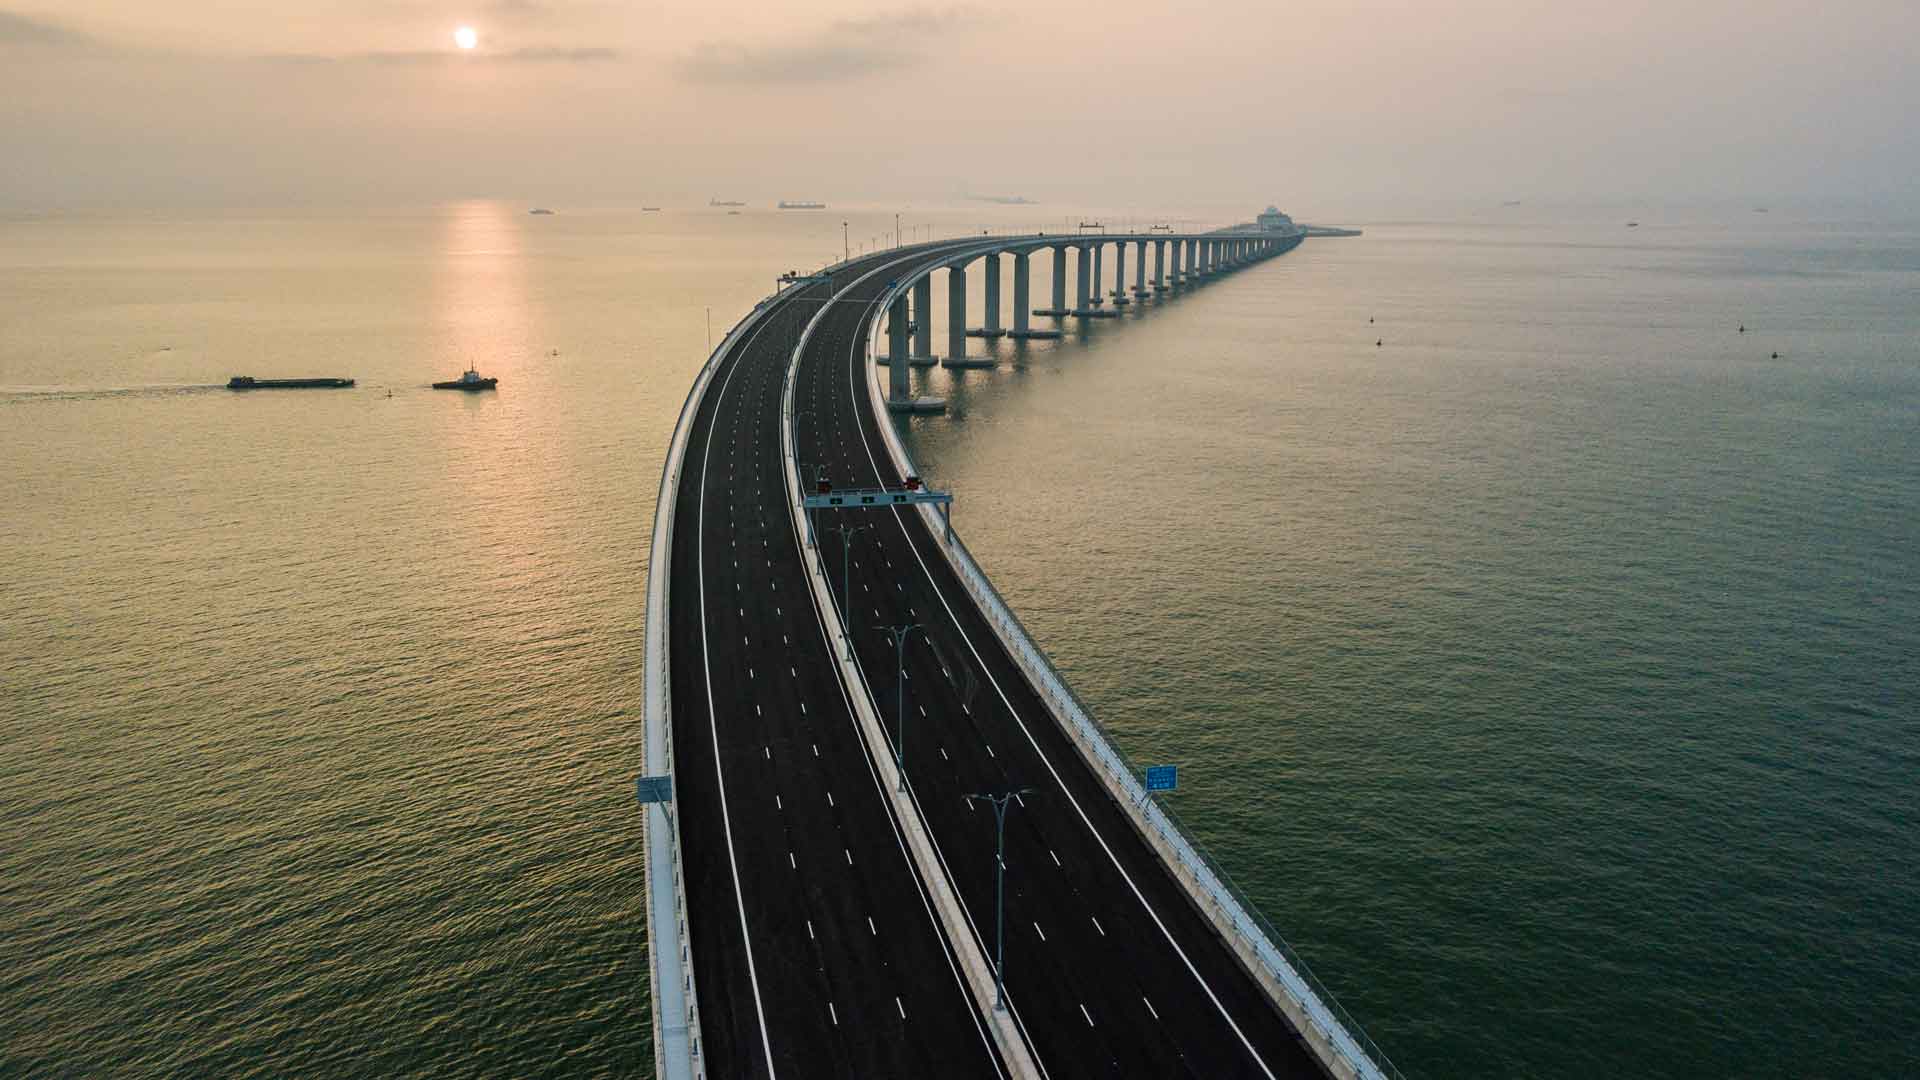 Inaugurado el puente más largo del mundo tras nueve años de polémica construcción